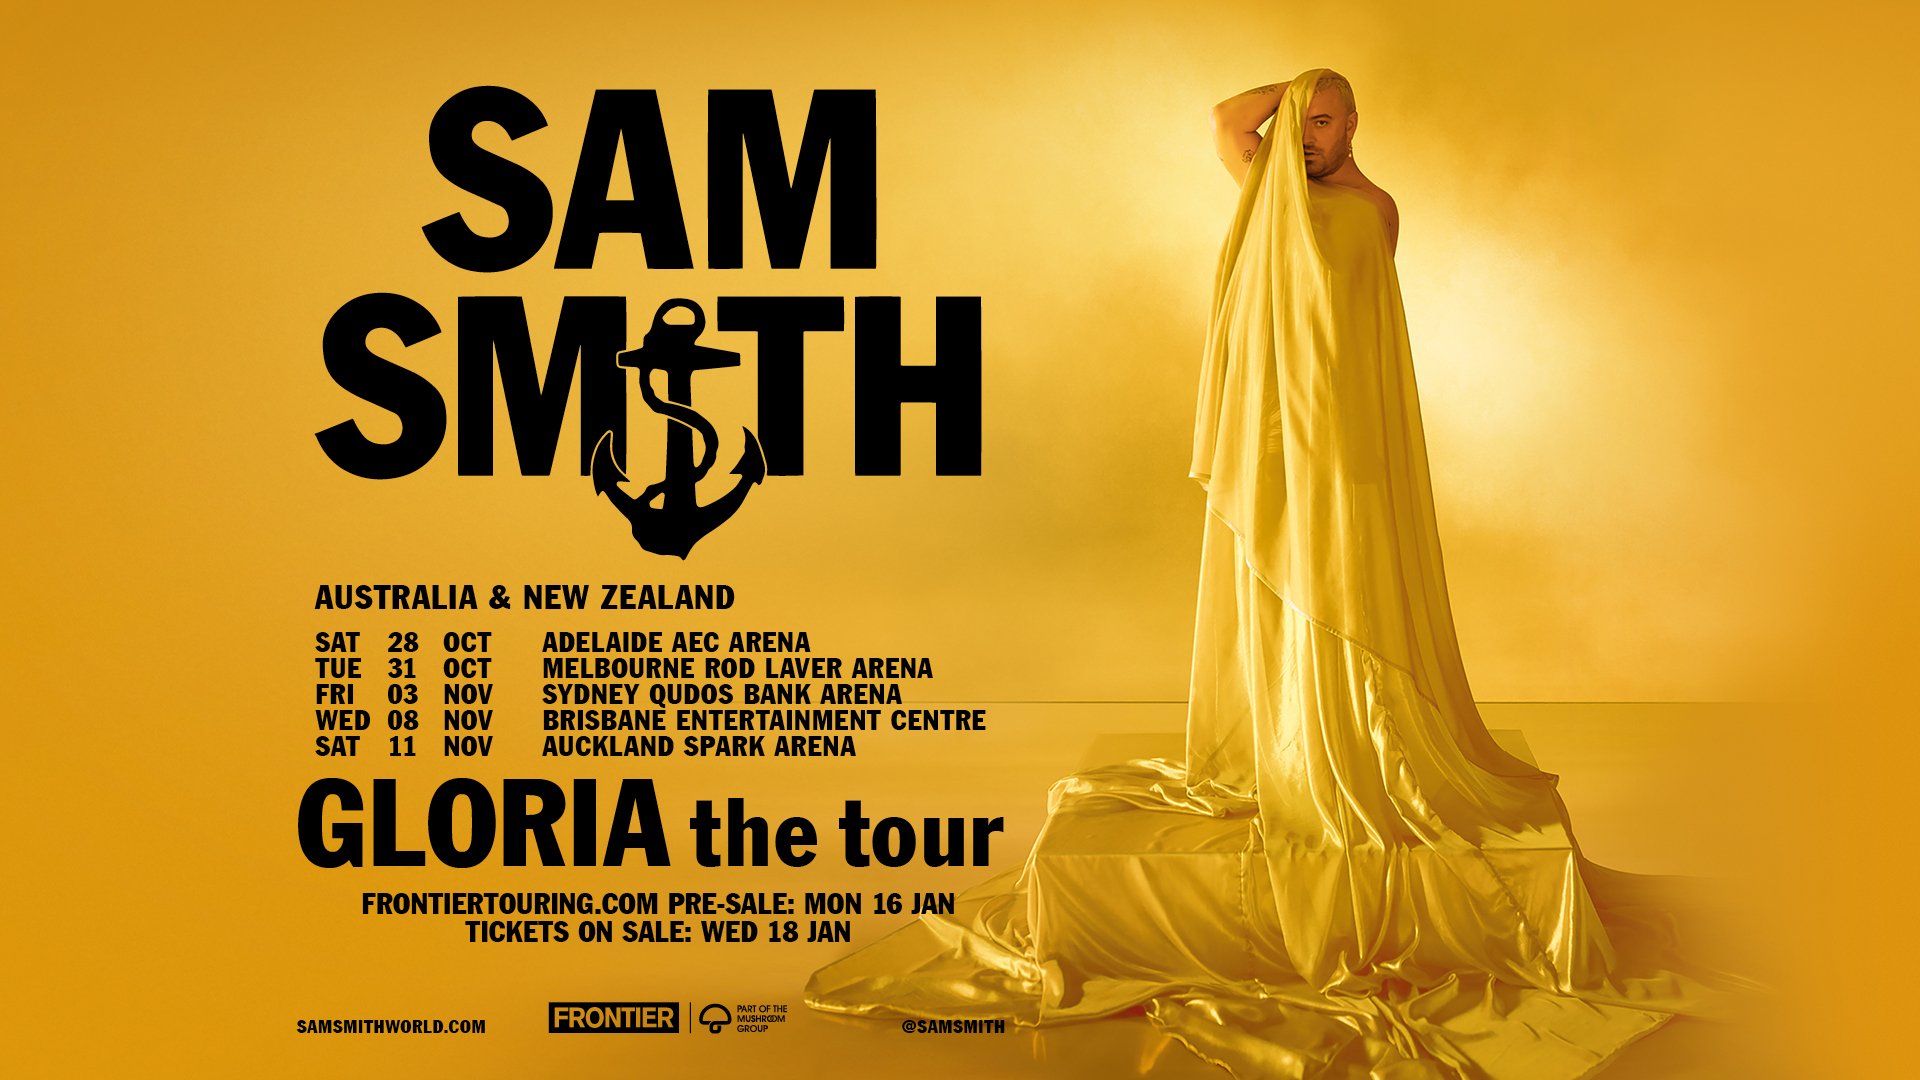 Sam Smith Announces New Album 'Gloria